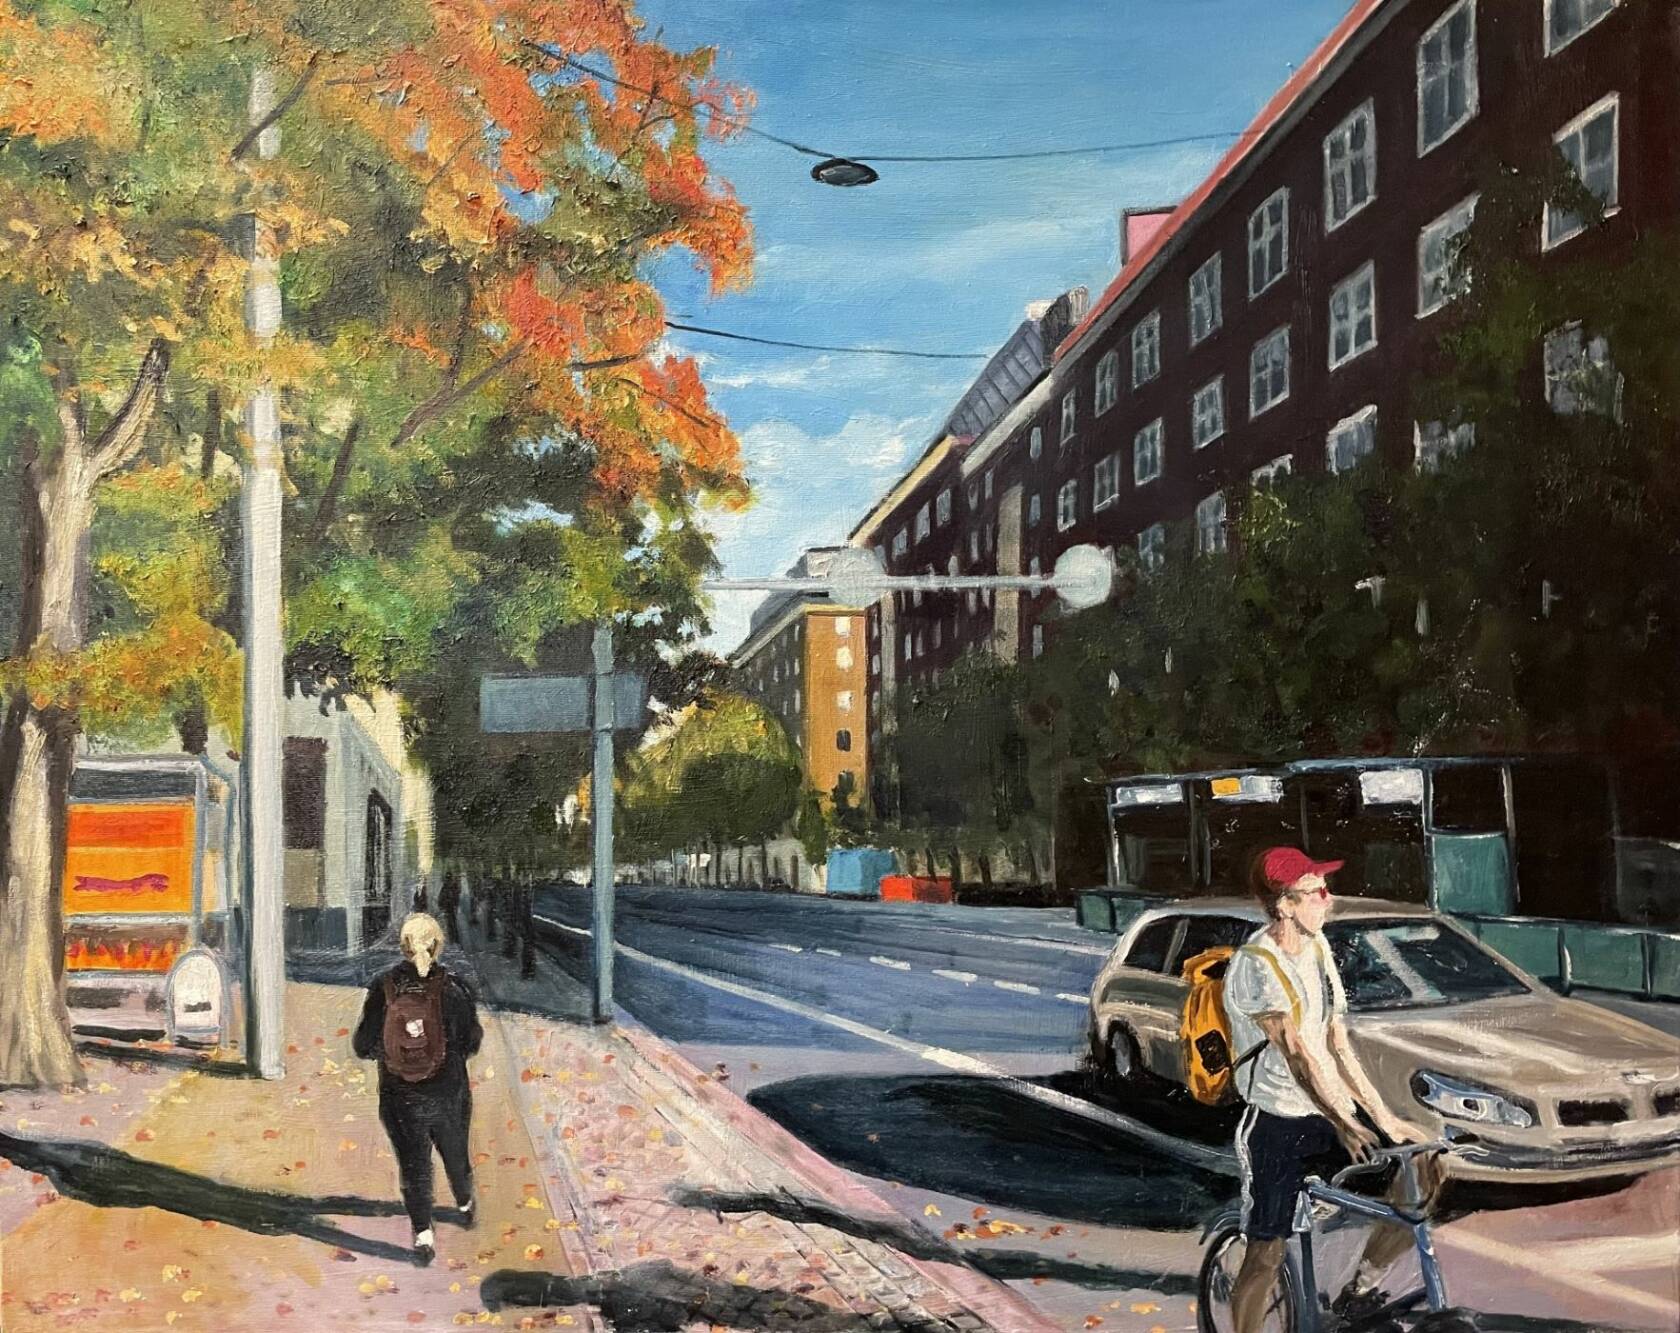 Kaupunkimaisema-maalaus, jossa autoja, ihmisiä, taloja.